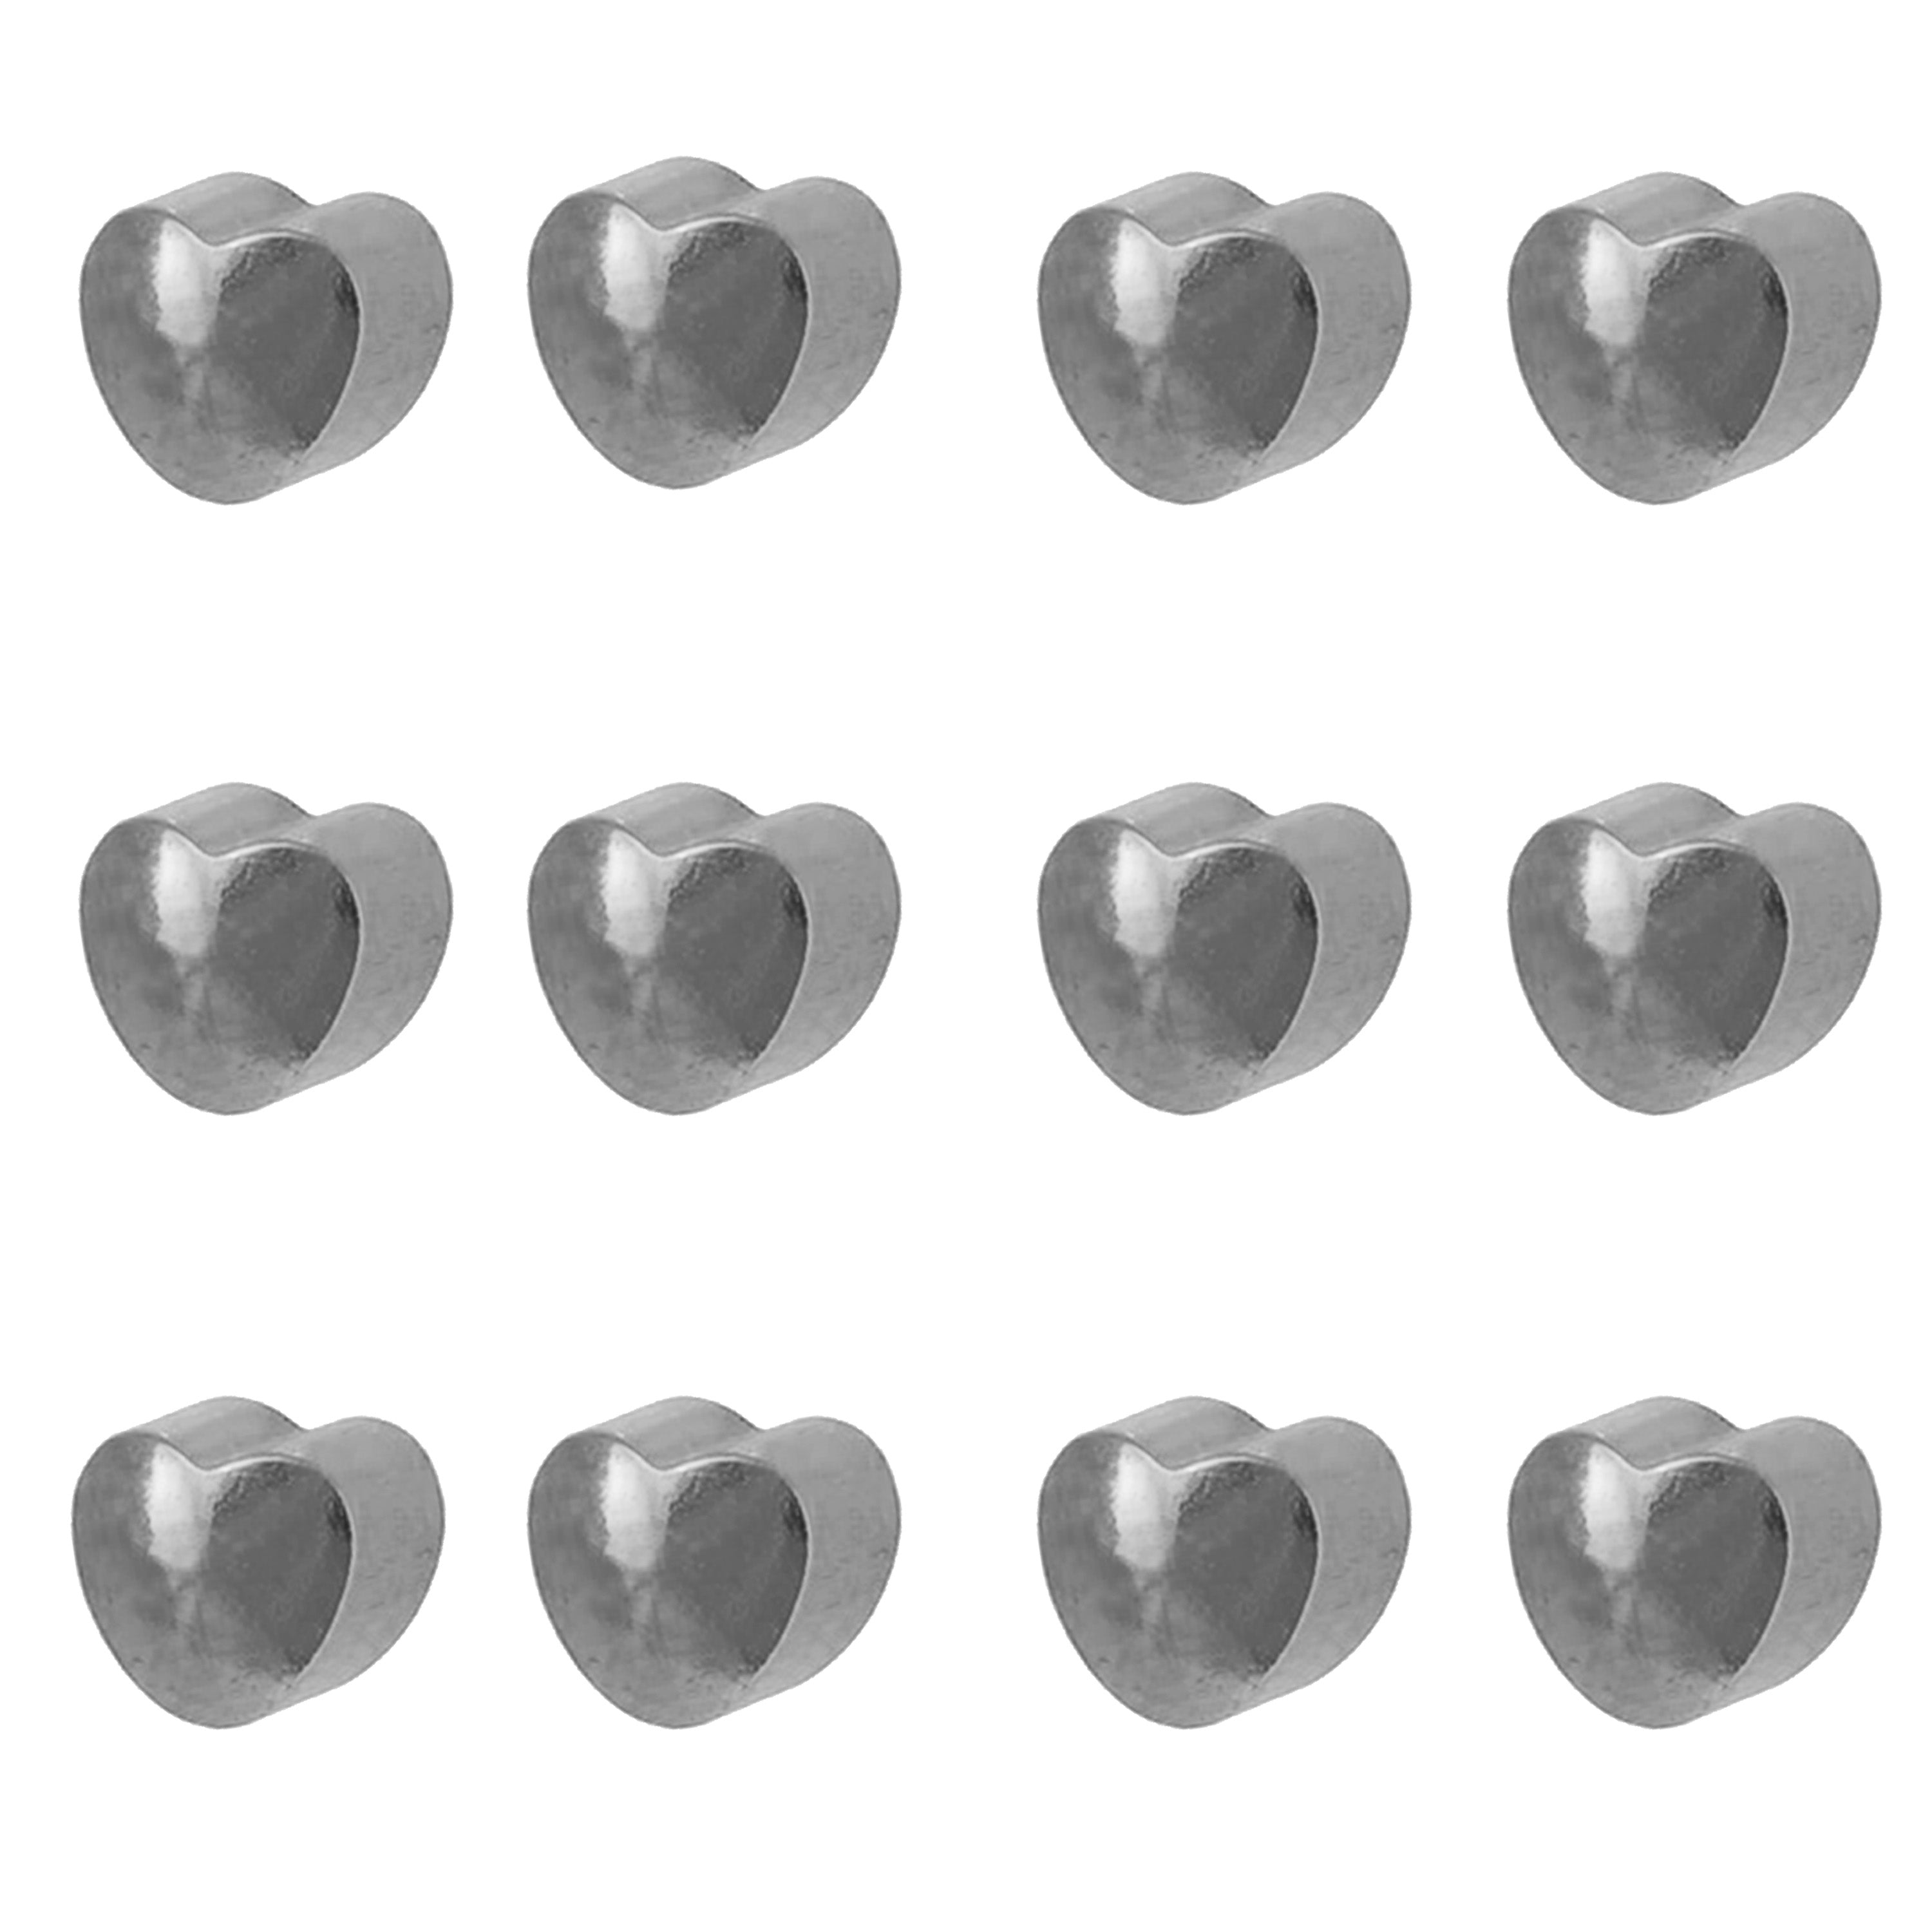 2MM Heart Allergy-free Stainless Steel Piercing Ear Stud (12 Pair)